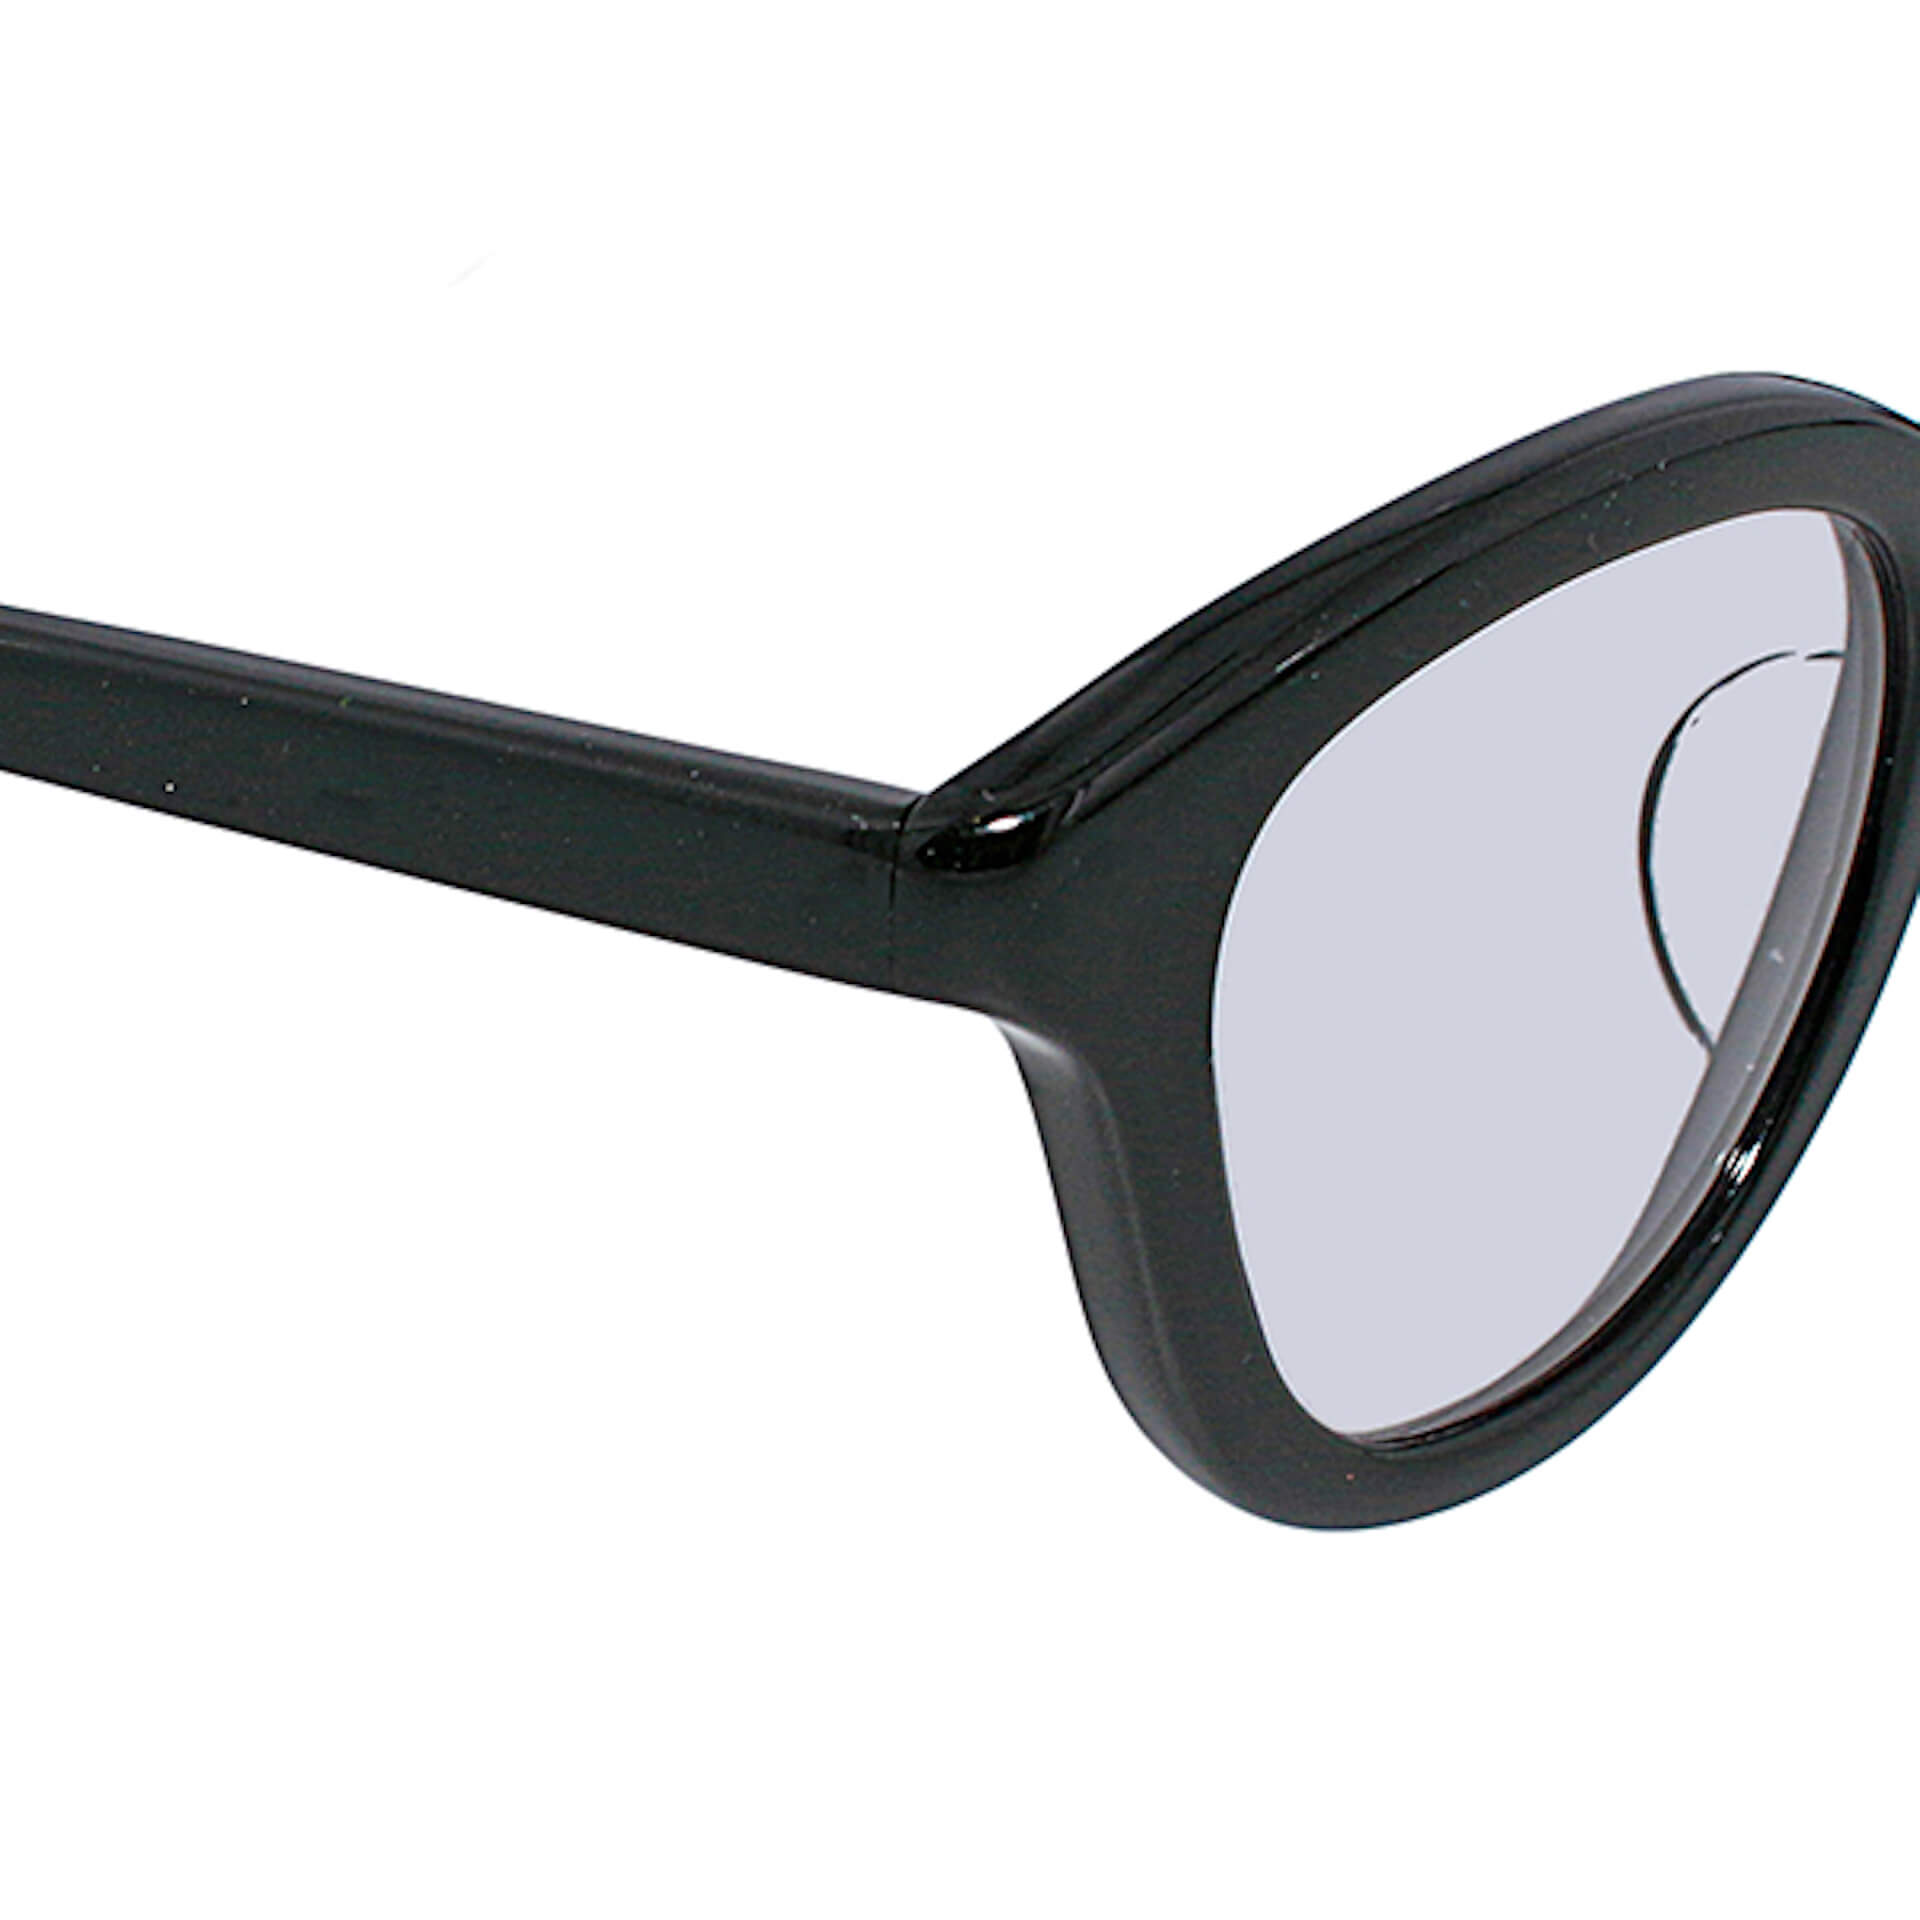 「POKER FACE」がアイウェアブランド「ayame」に別注をかけたセルロイド製の「曇らないサングラス」を発売決定！ Fashion_210719_koro7